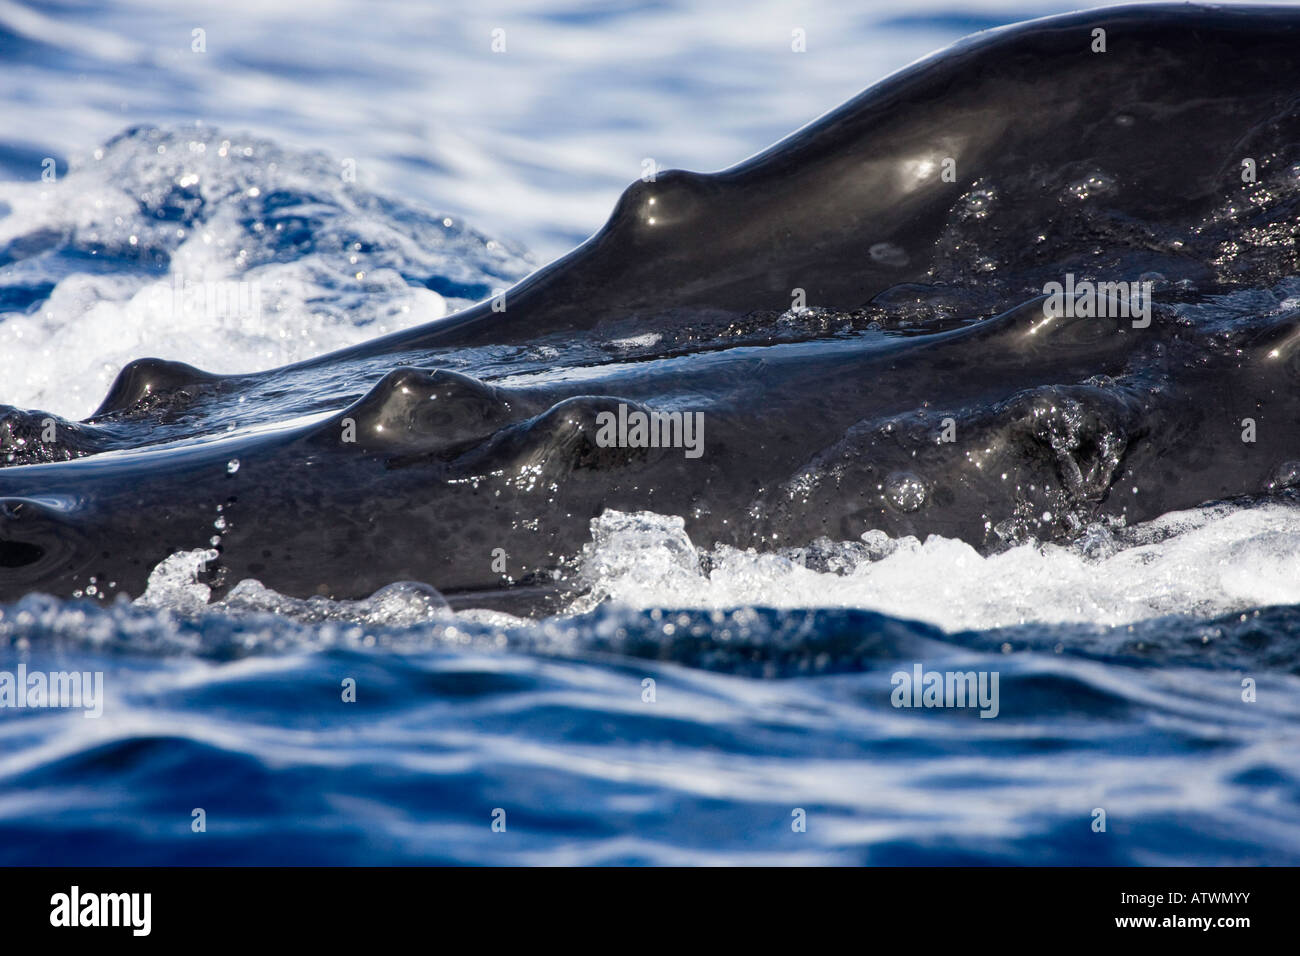 Un examen attentif de la bosse comme des boutons, connu sous le nom de tubercules, sur le dessus de la tête d'une baleine à bosse, Megaptera novaeangliae. Banque D'Images